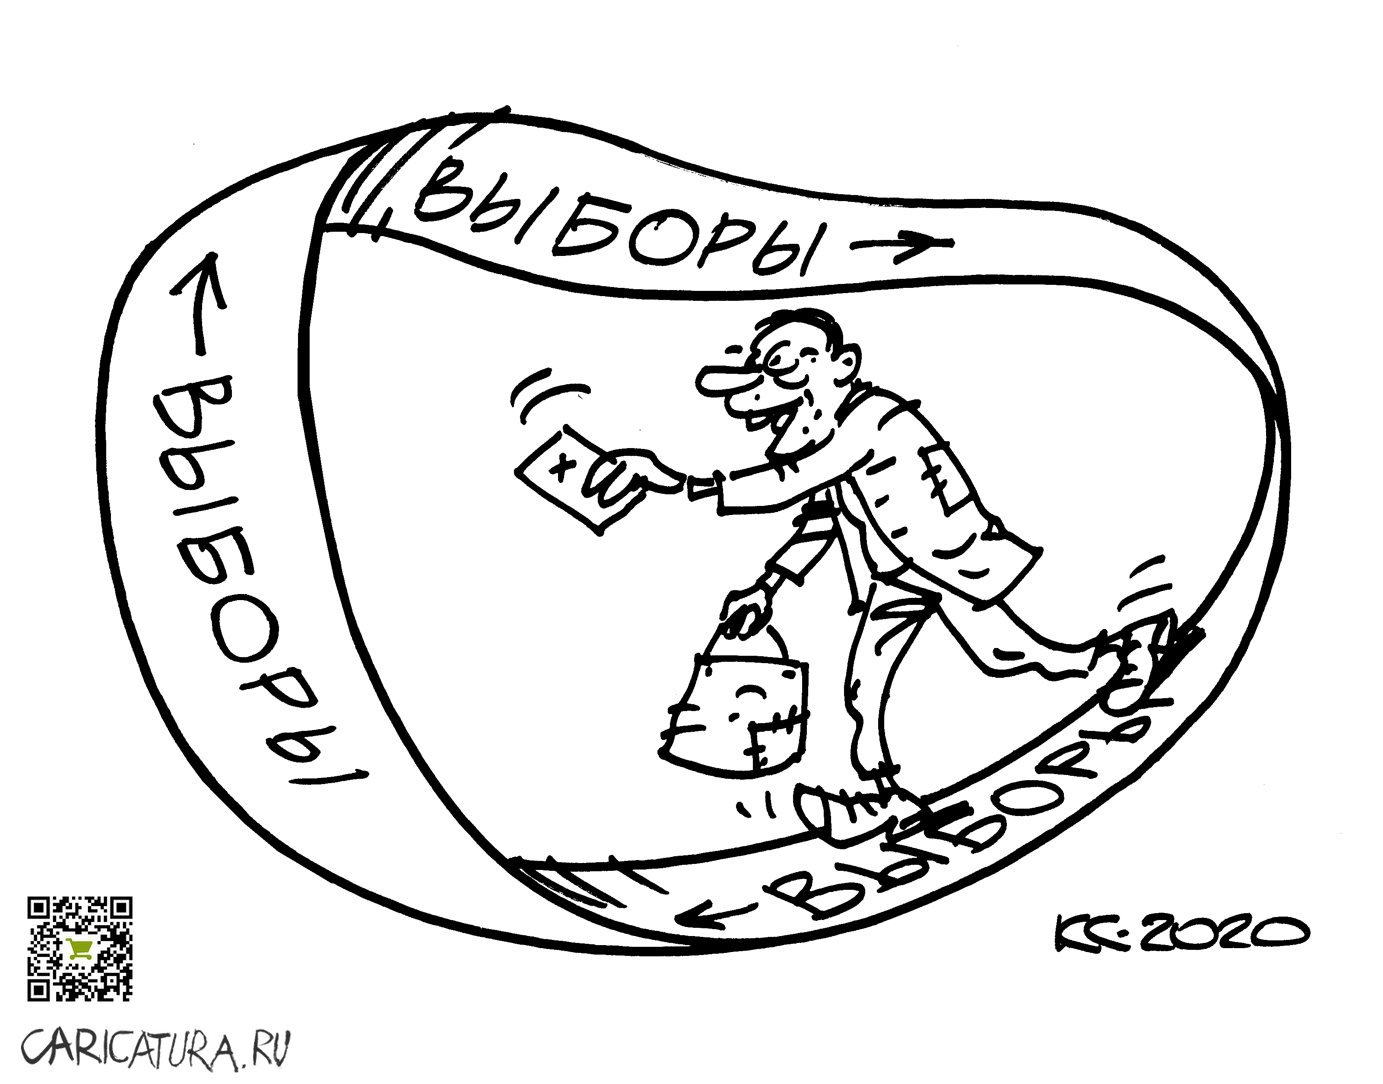 Карикатура "Дорога без конца", Вячеслав Капрельянц